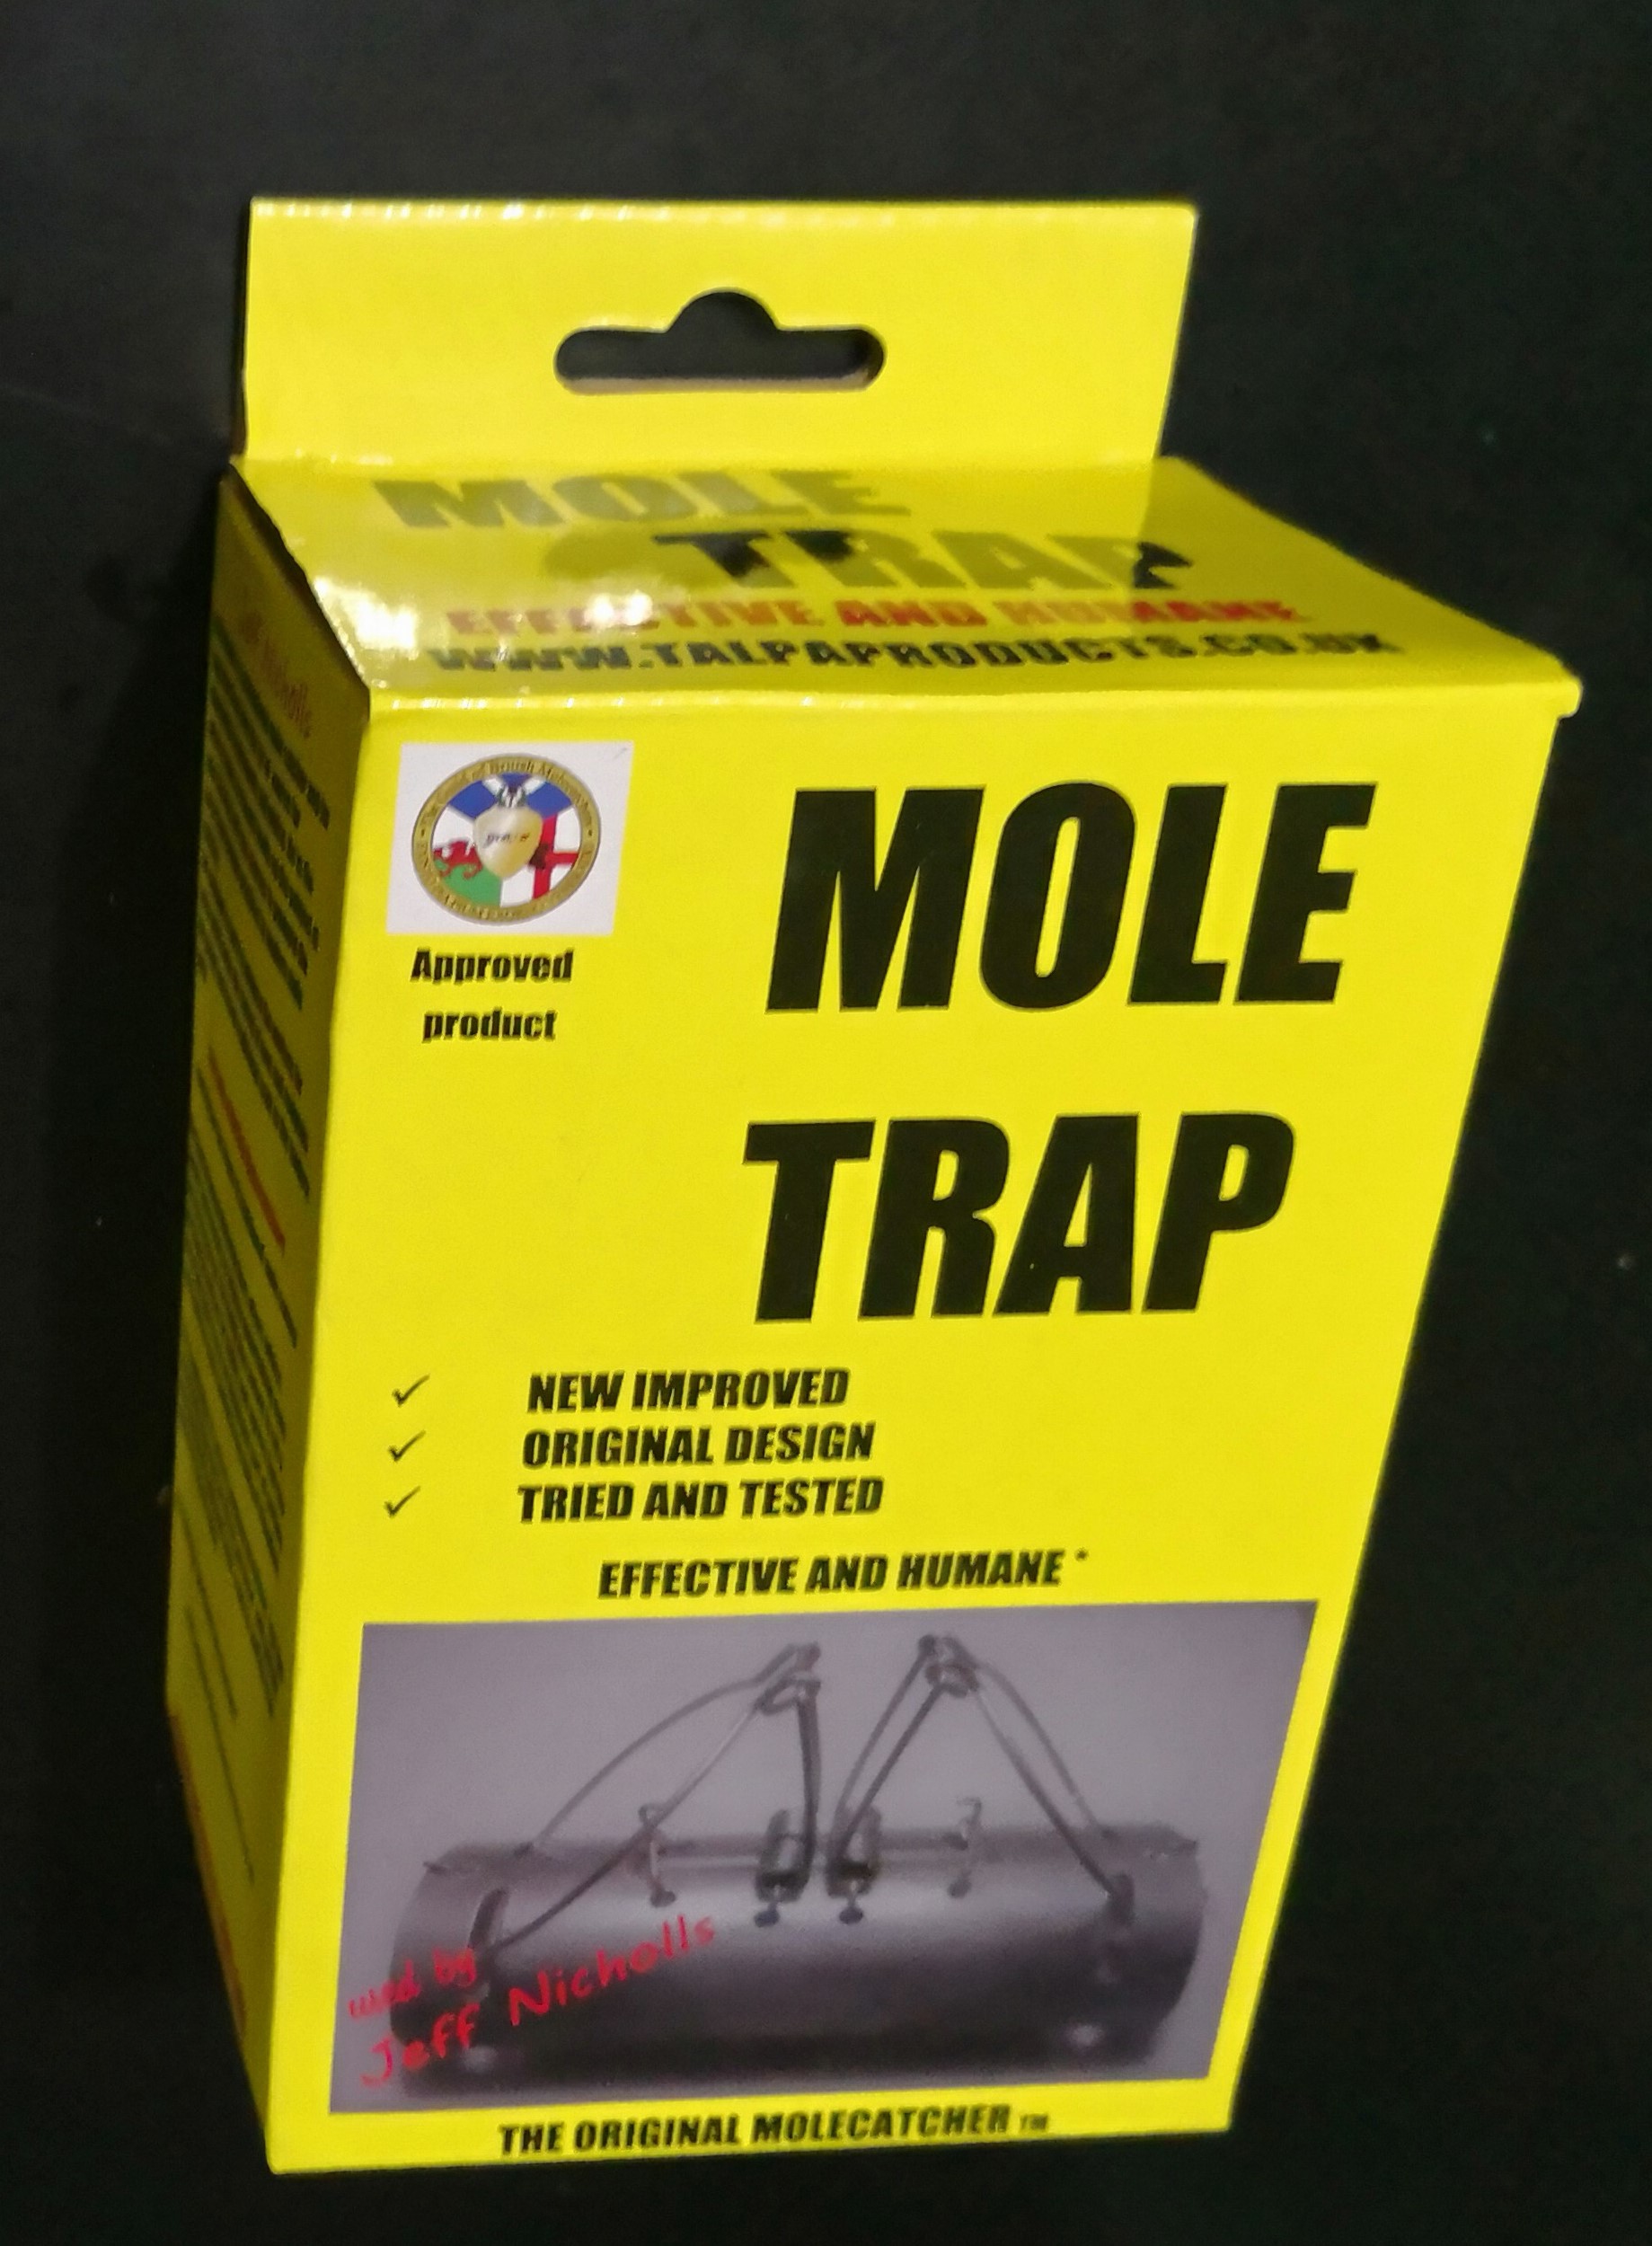 mega deal buy 40 half barrel traps at just £4-50 per trap